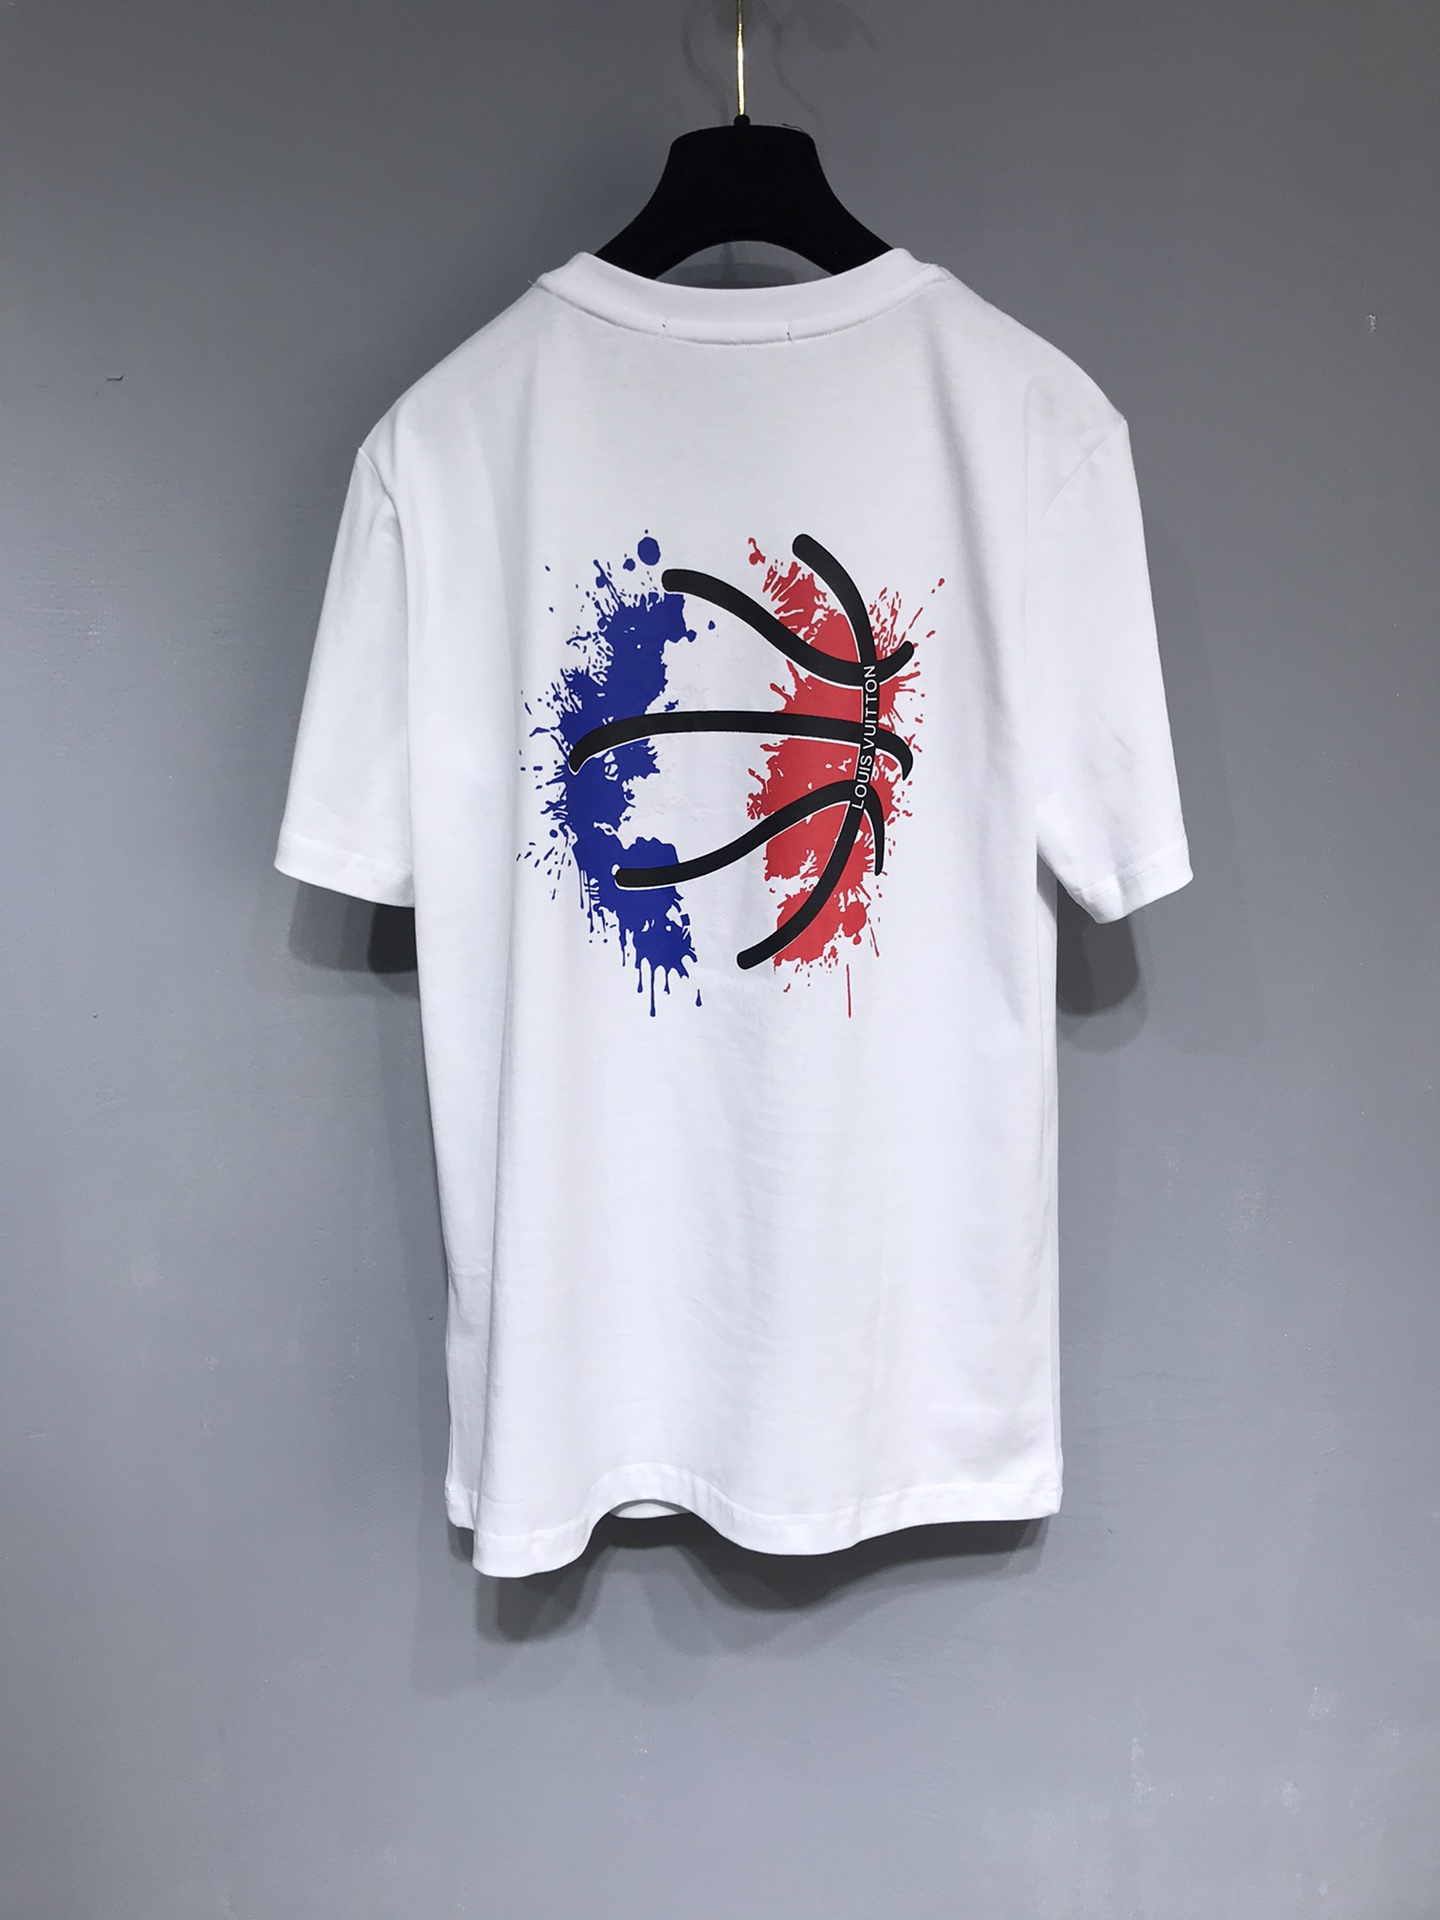 LV 2021 Flowers x NBA Tshirt